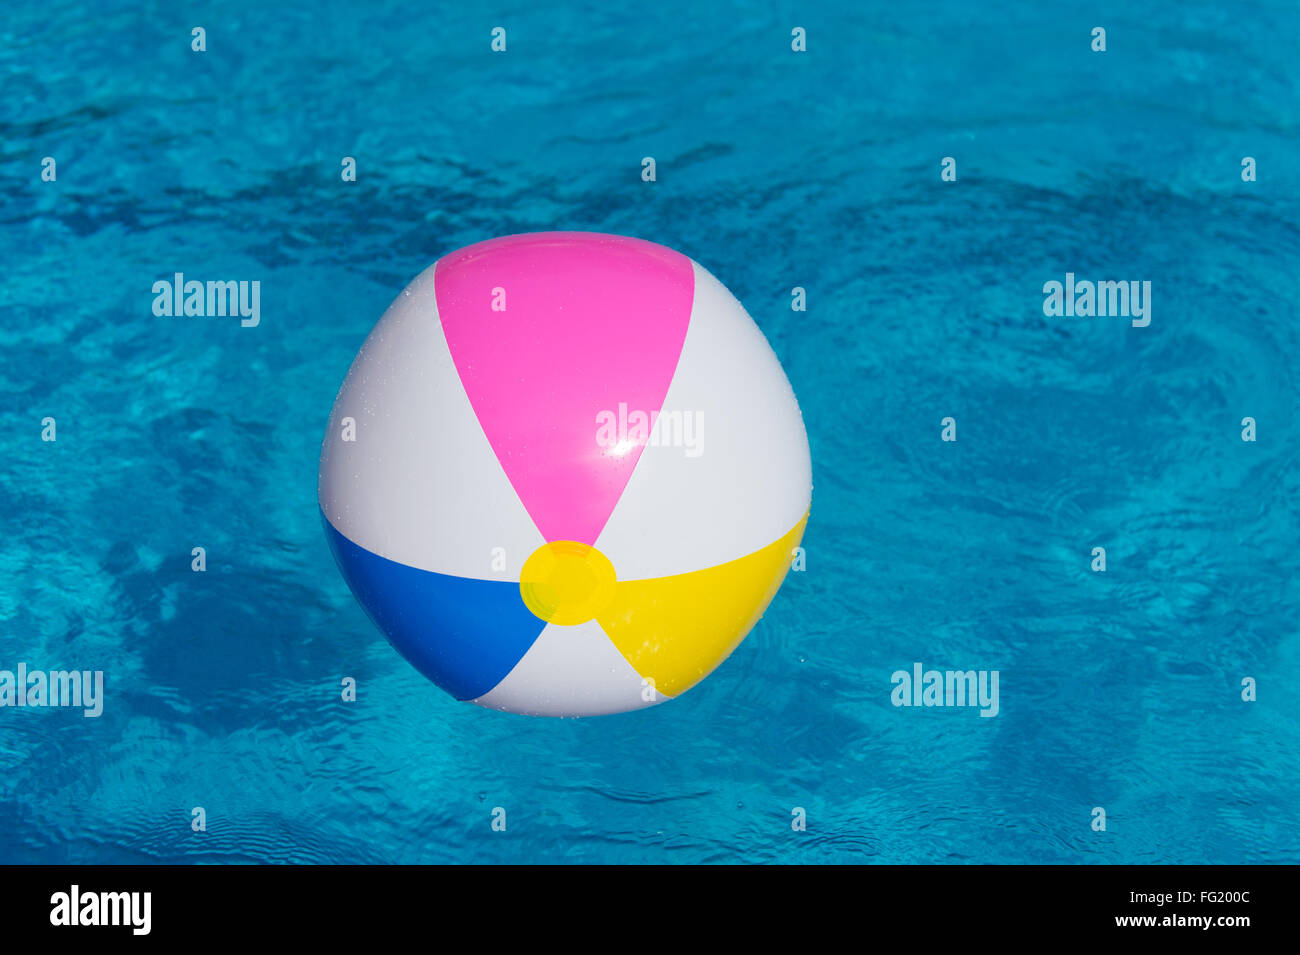 https://c8.alamy.com/compfr/fg200c/ballon-gonflable-colore-dans-la-piscine-fg200c.jpg